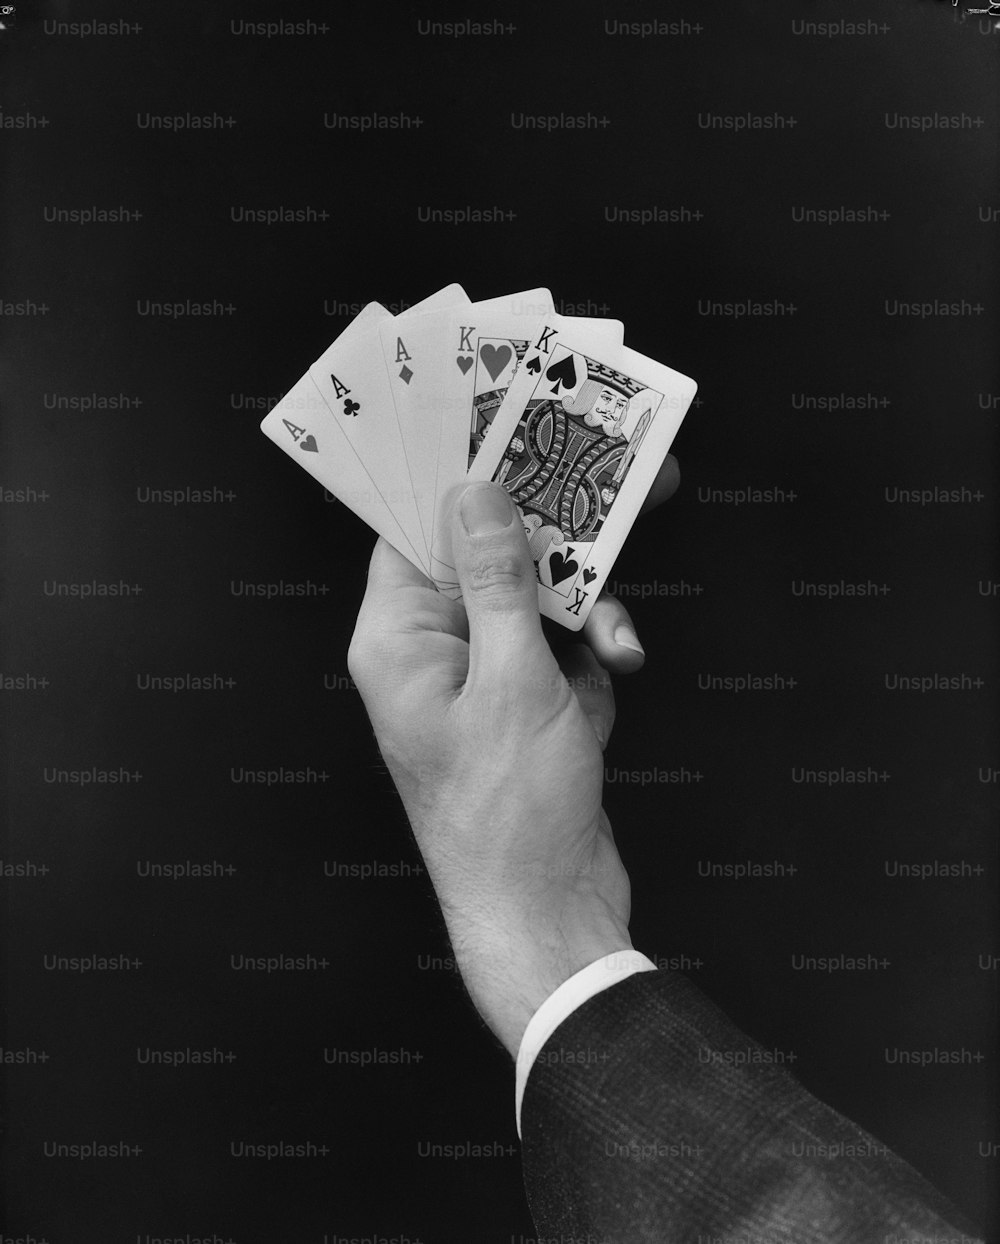 STATI UNITI - 1950 CIRCA: Mano dell'uomo che tiene la mano della carta da poker 'full'.